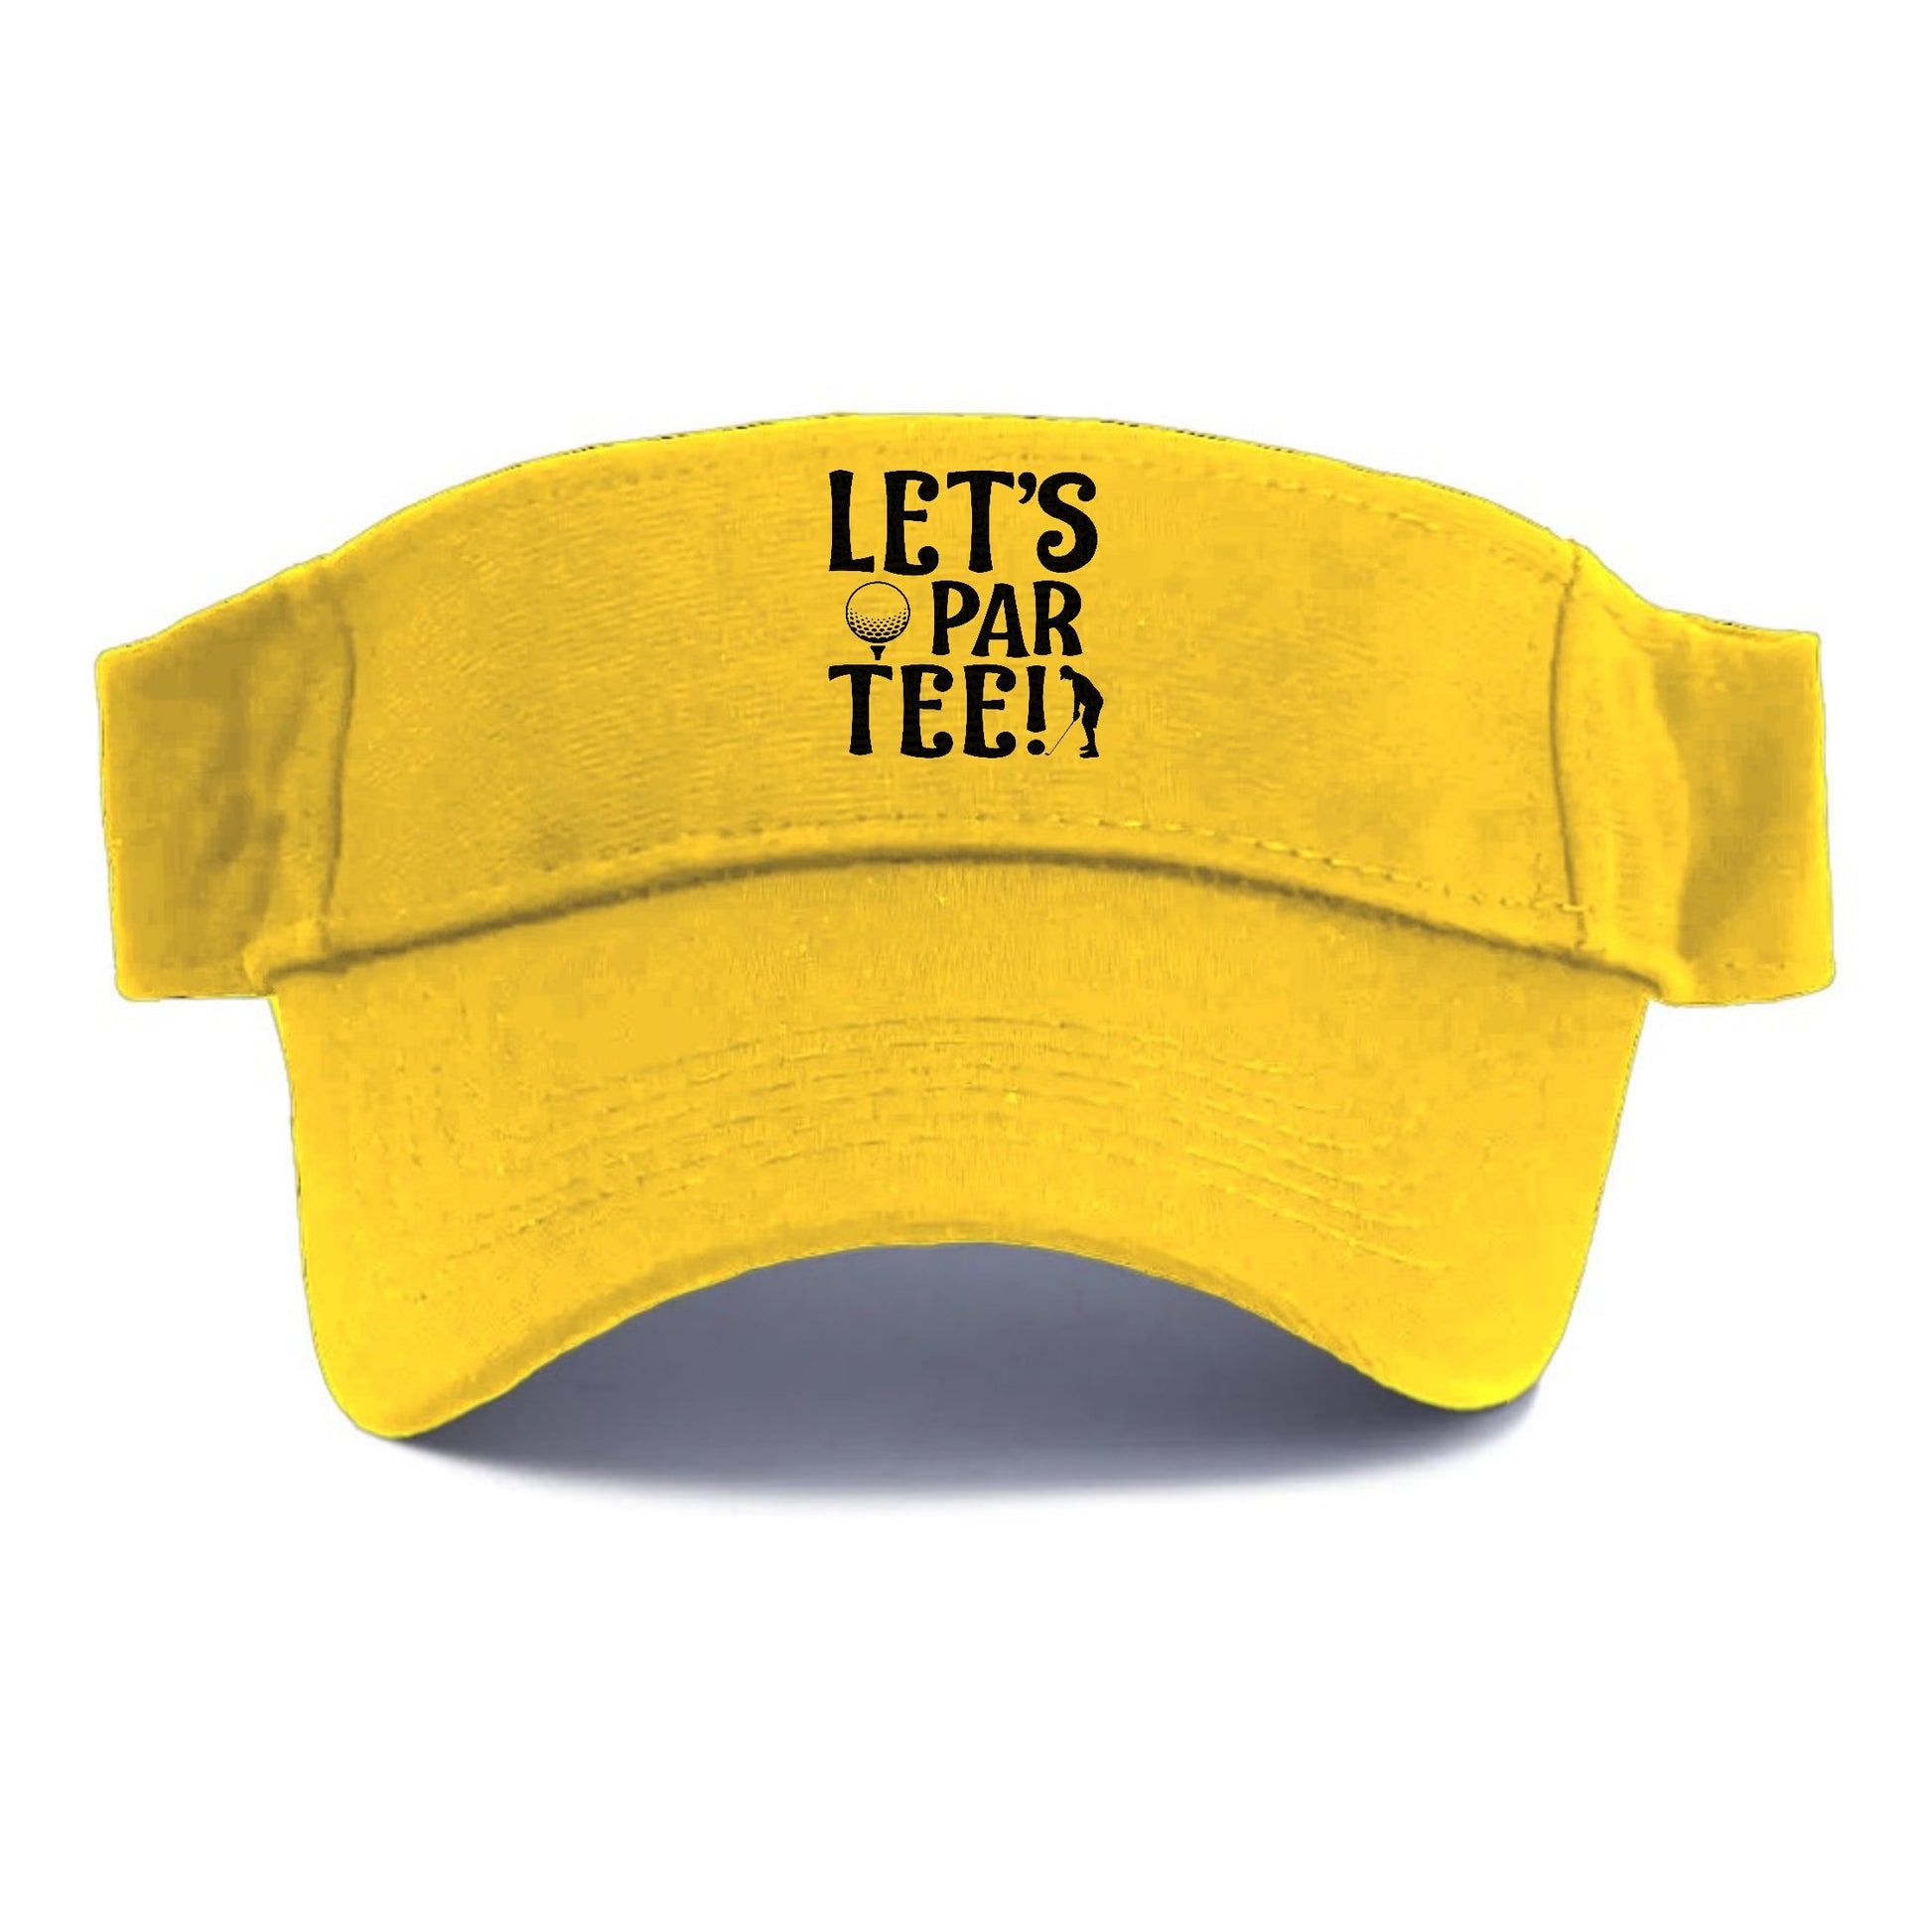 Let's par tee Hat